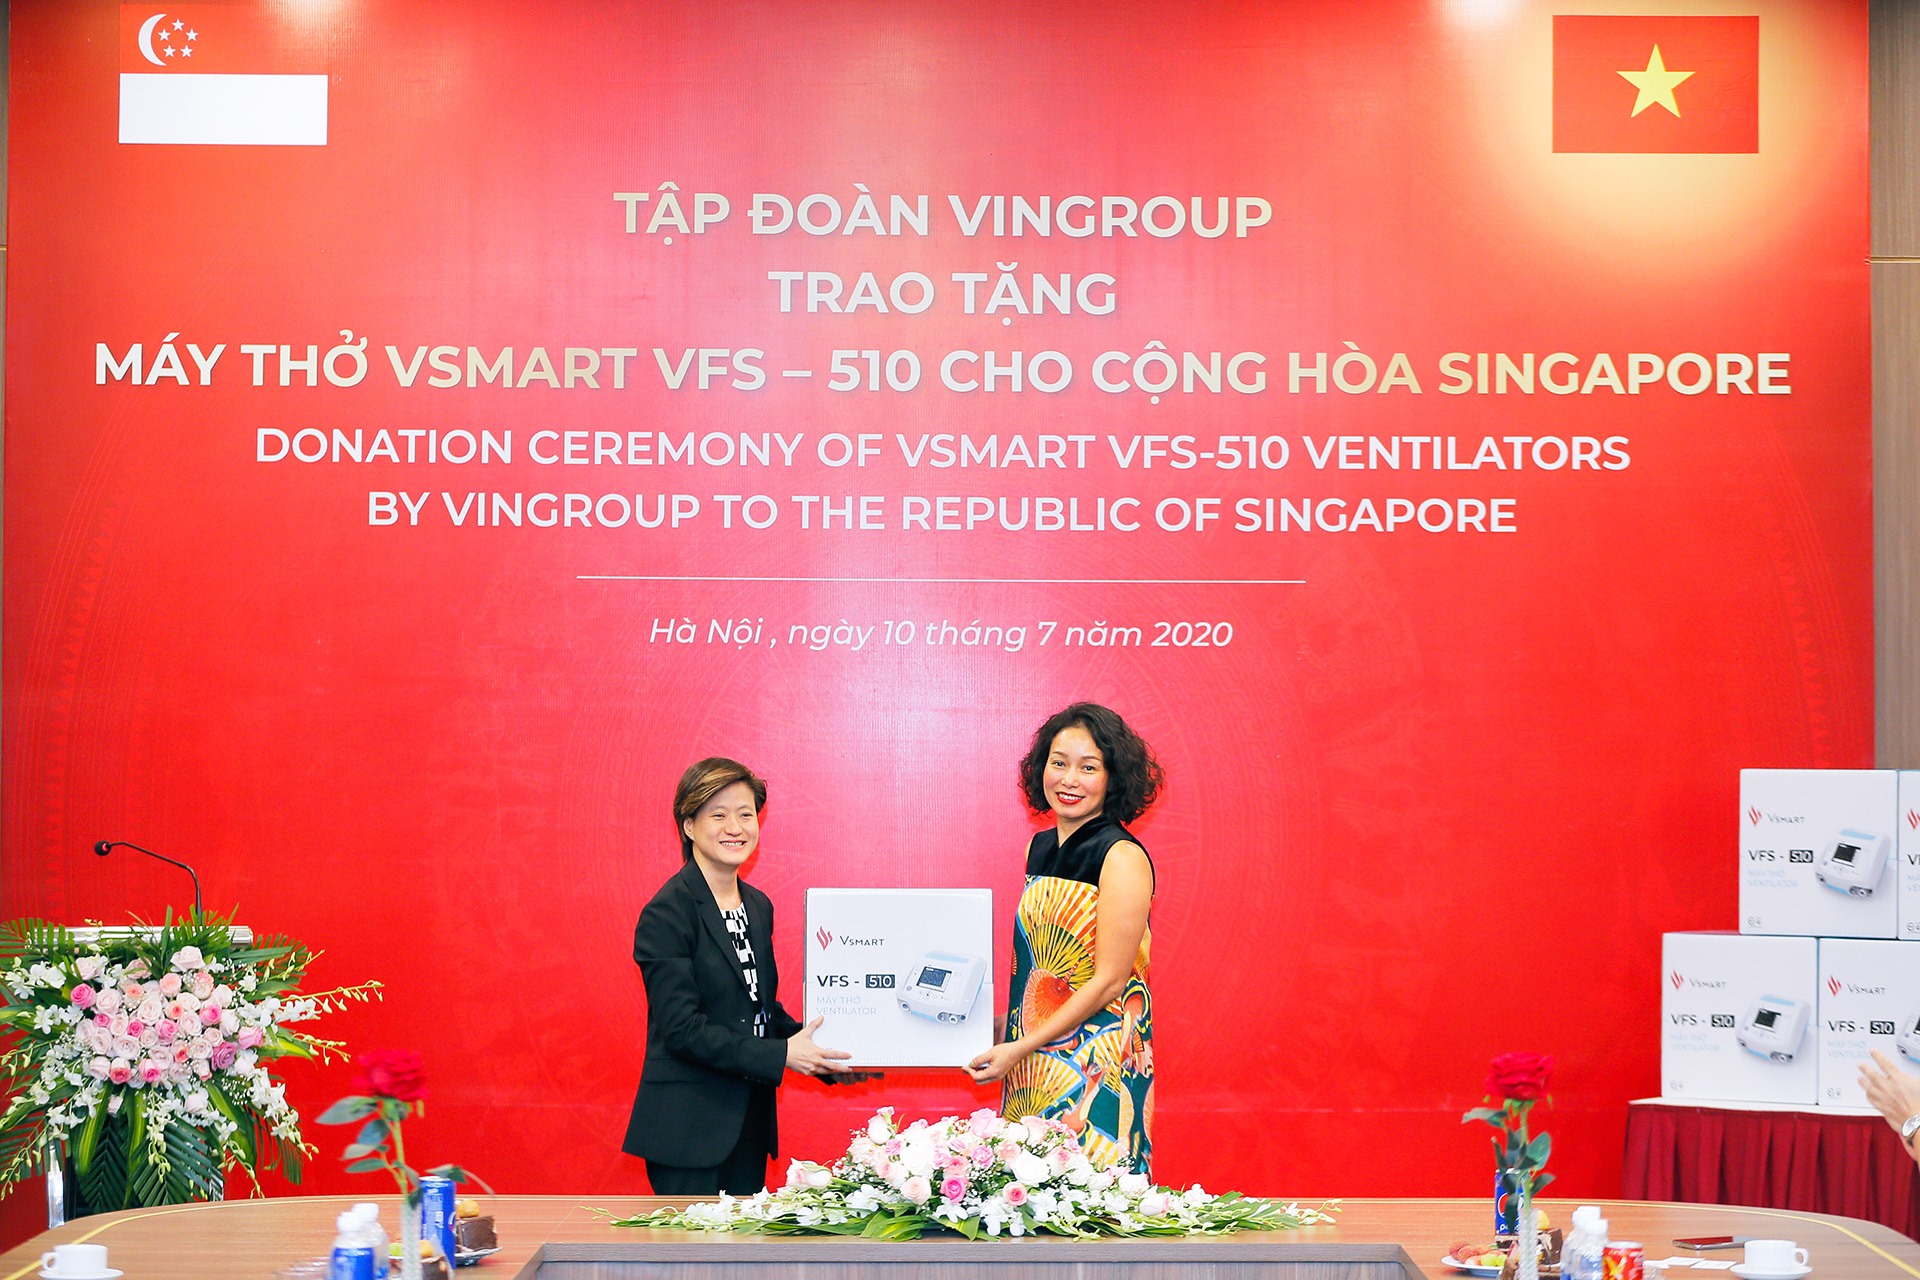 Phó Chủ tịch Tập đoàn Vingroup Lê Thị Thu Thủy trao tặng 200 máy thở cho bà Catherine Wong, Đại sứ Singapore tại Việt Nam.